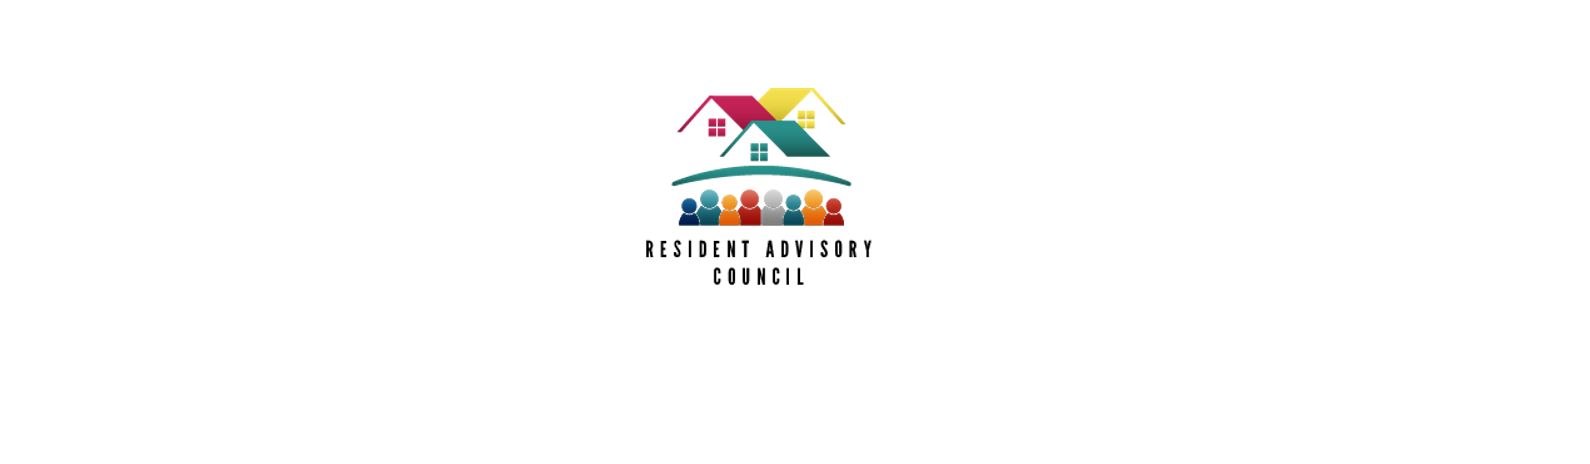 El Consejo Asesor de Residentes de Central Providence Opportunities publica la convocatoria para la solicitud de subvenciones de proyectos dirigidos a los vecinos en Central Providence.